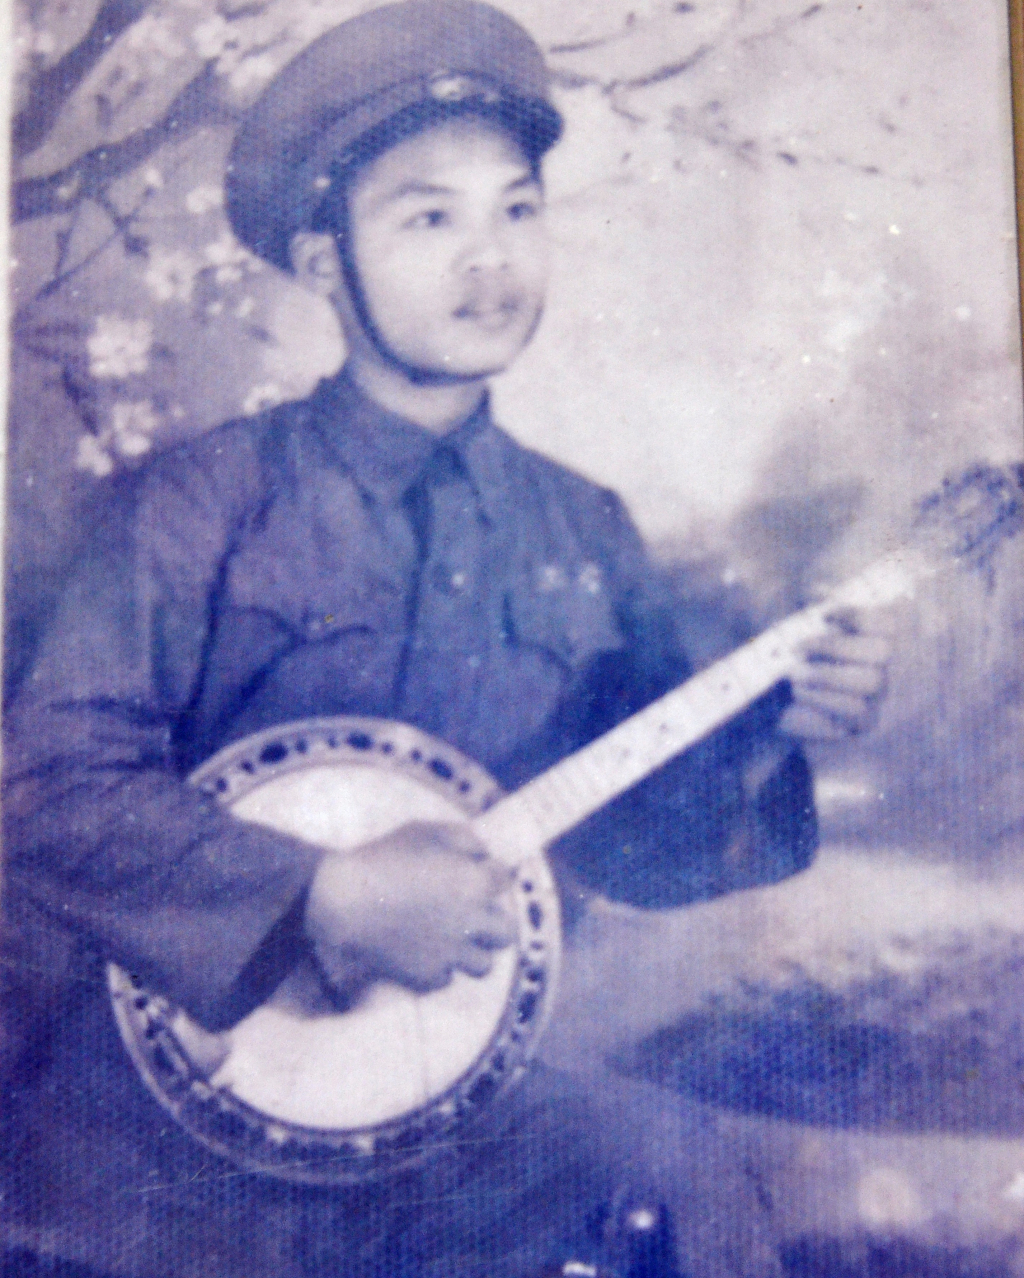 Ông Trần Trọng Tú lúc trẻ khi về tiếp quản Thủ đô Hà Nội tháng 10/1954. Ảnh: Tư liệu